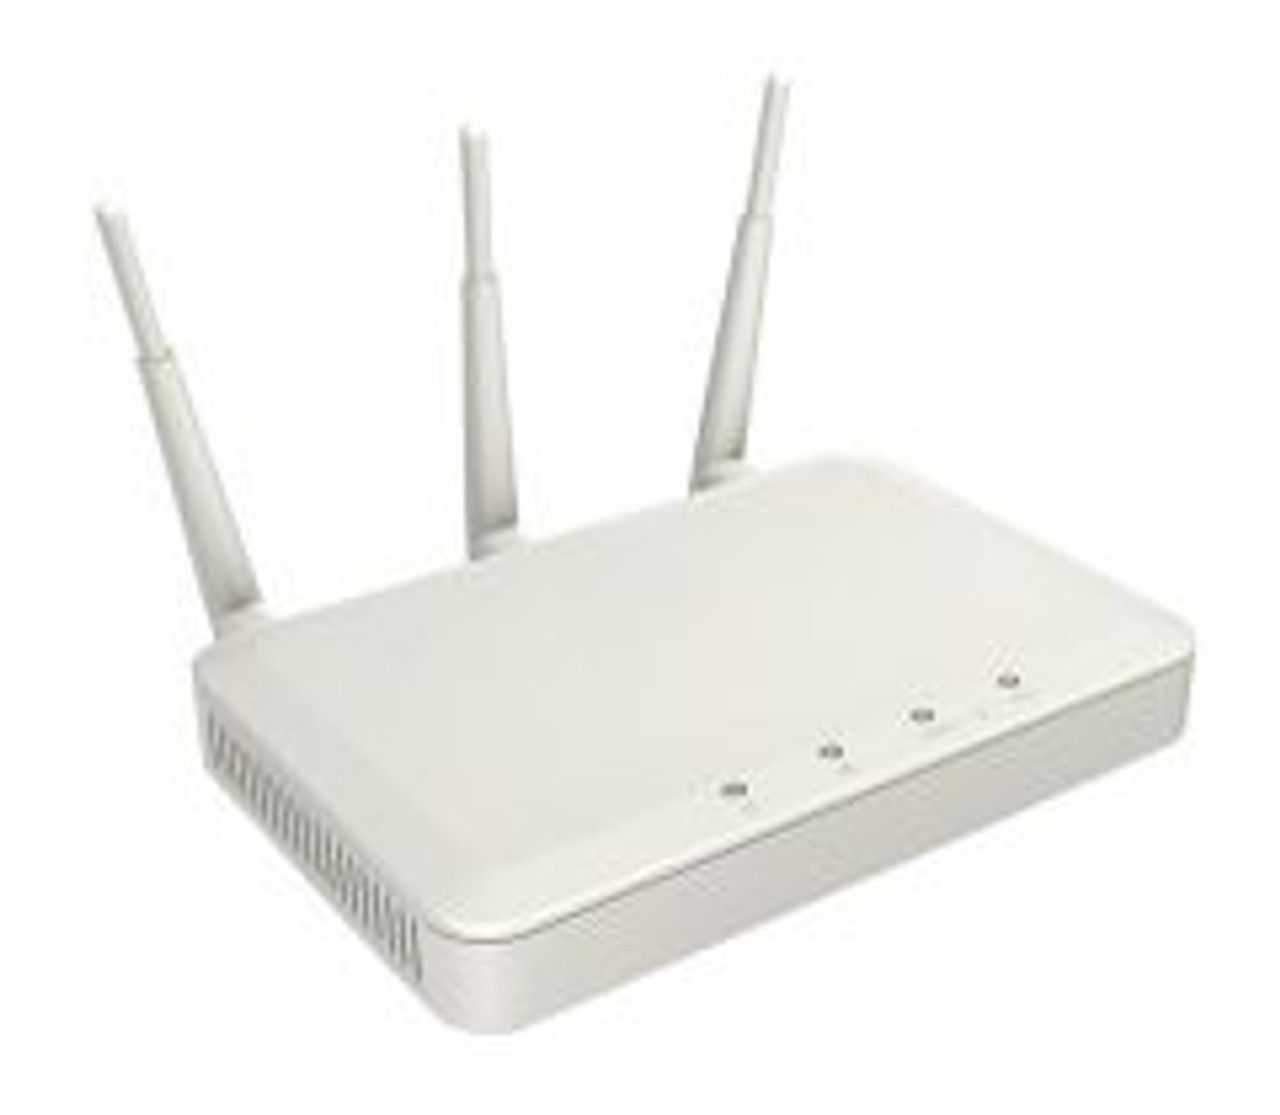 AIR-LAP1261N-A-K9 | CISCO | Aironet 1261N 300Mbps 802.11N Wireless Access Point